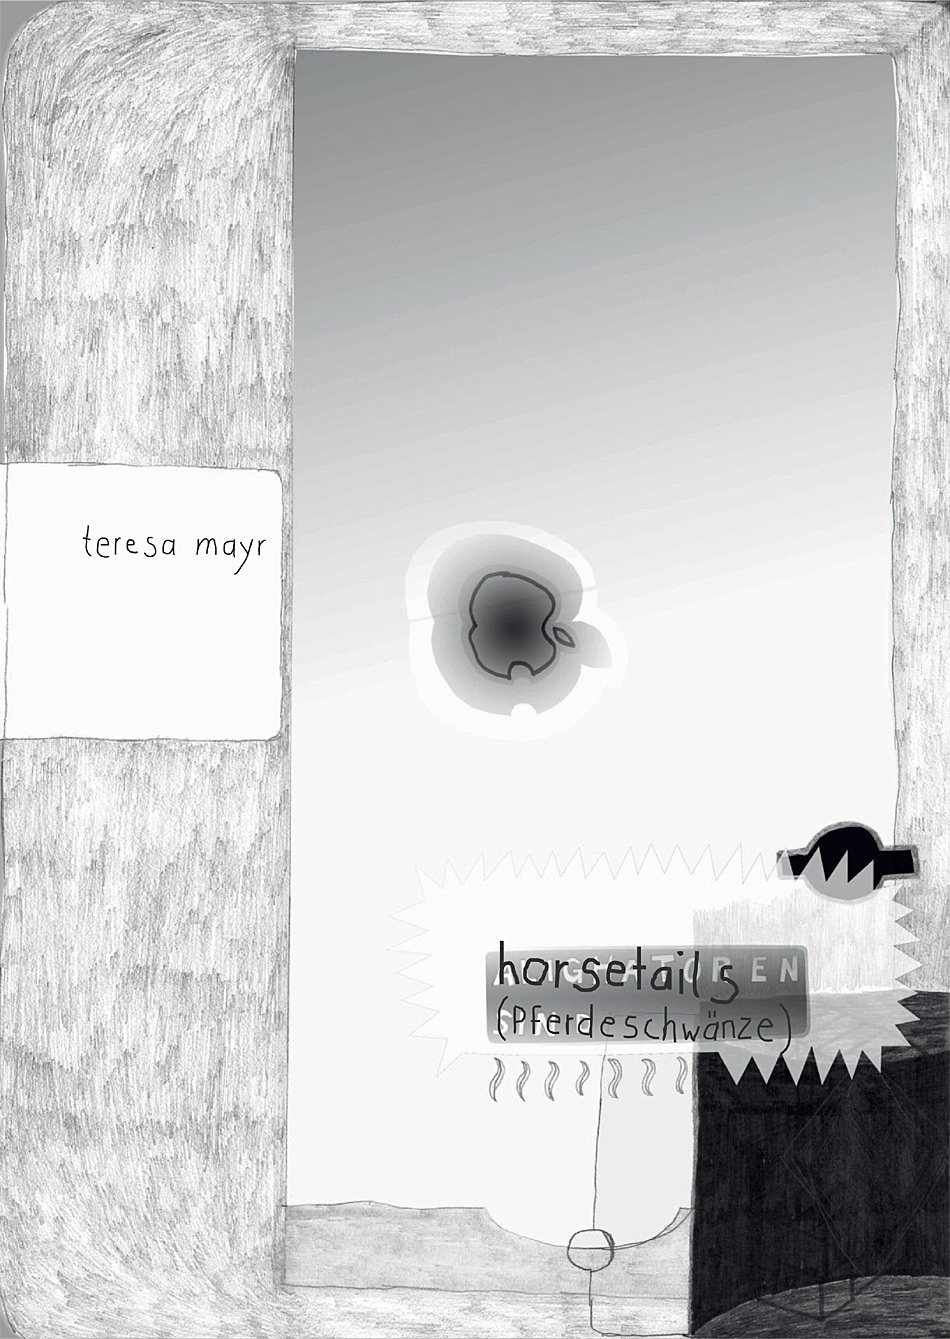 Teresa Mayr – horsetails (Pferdeschwänze)